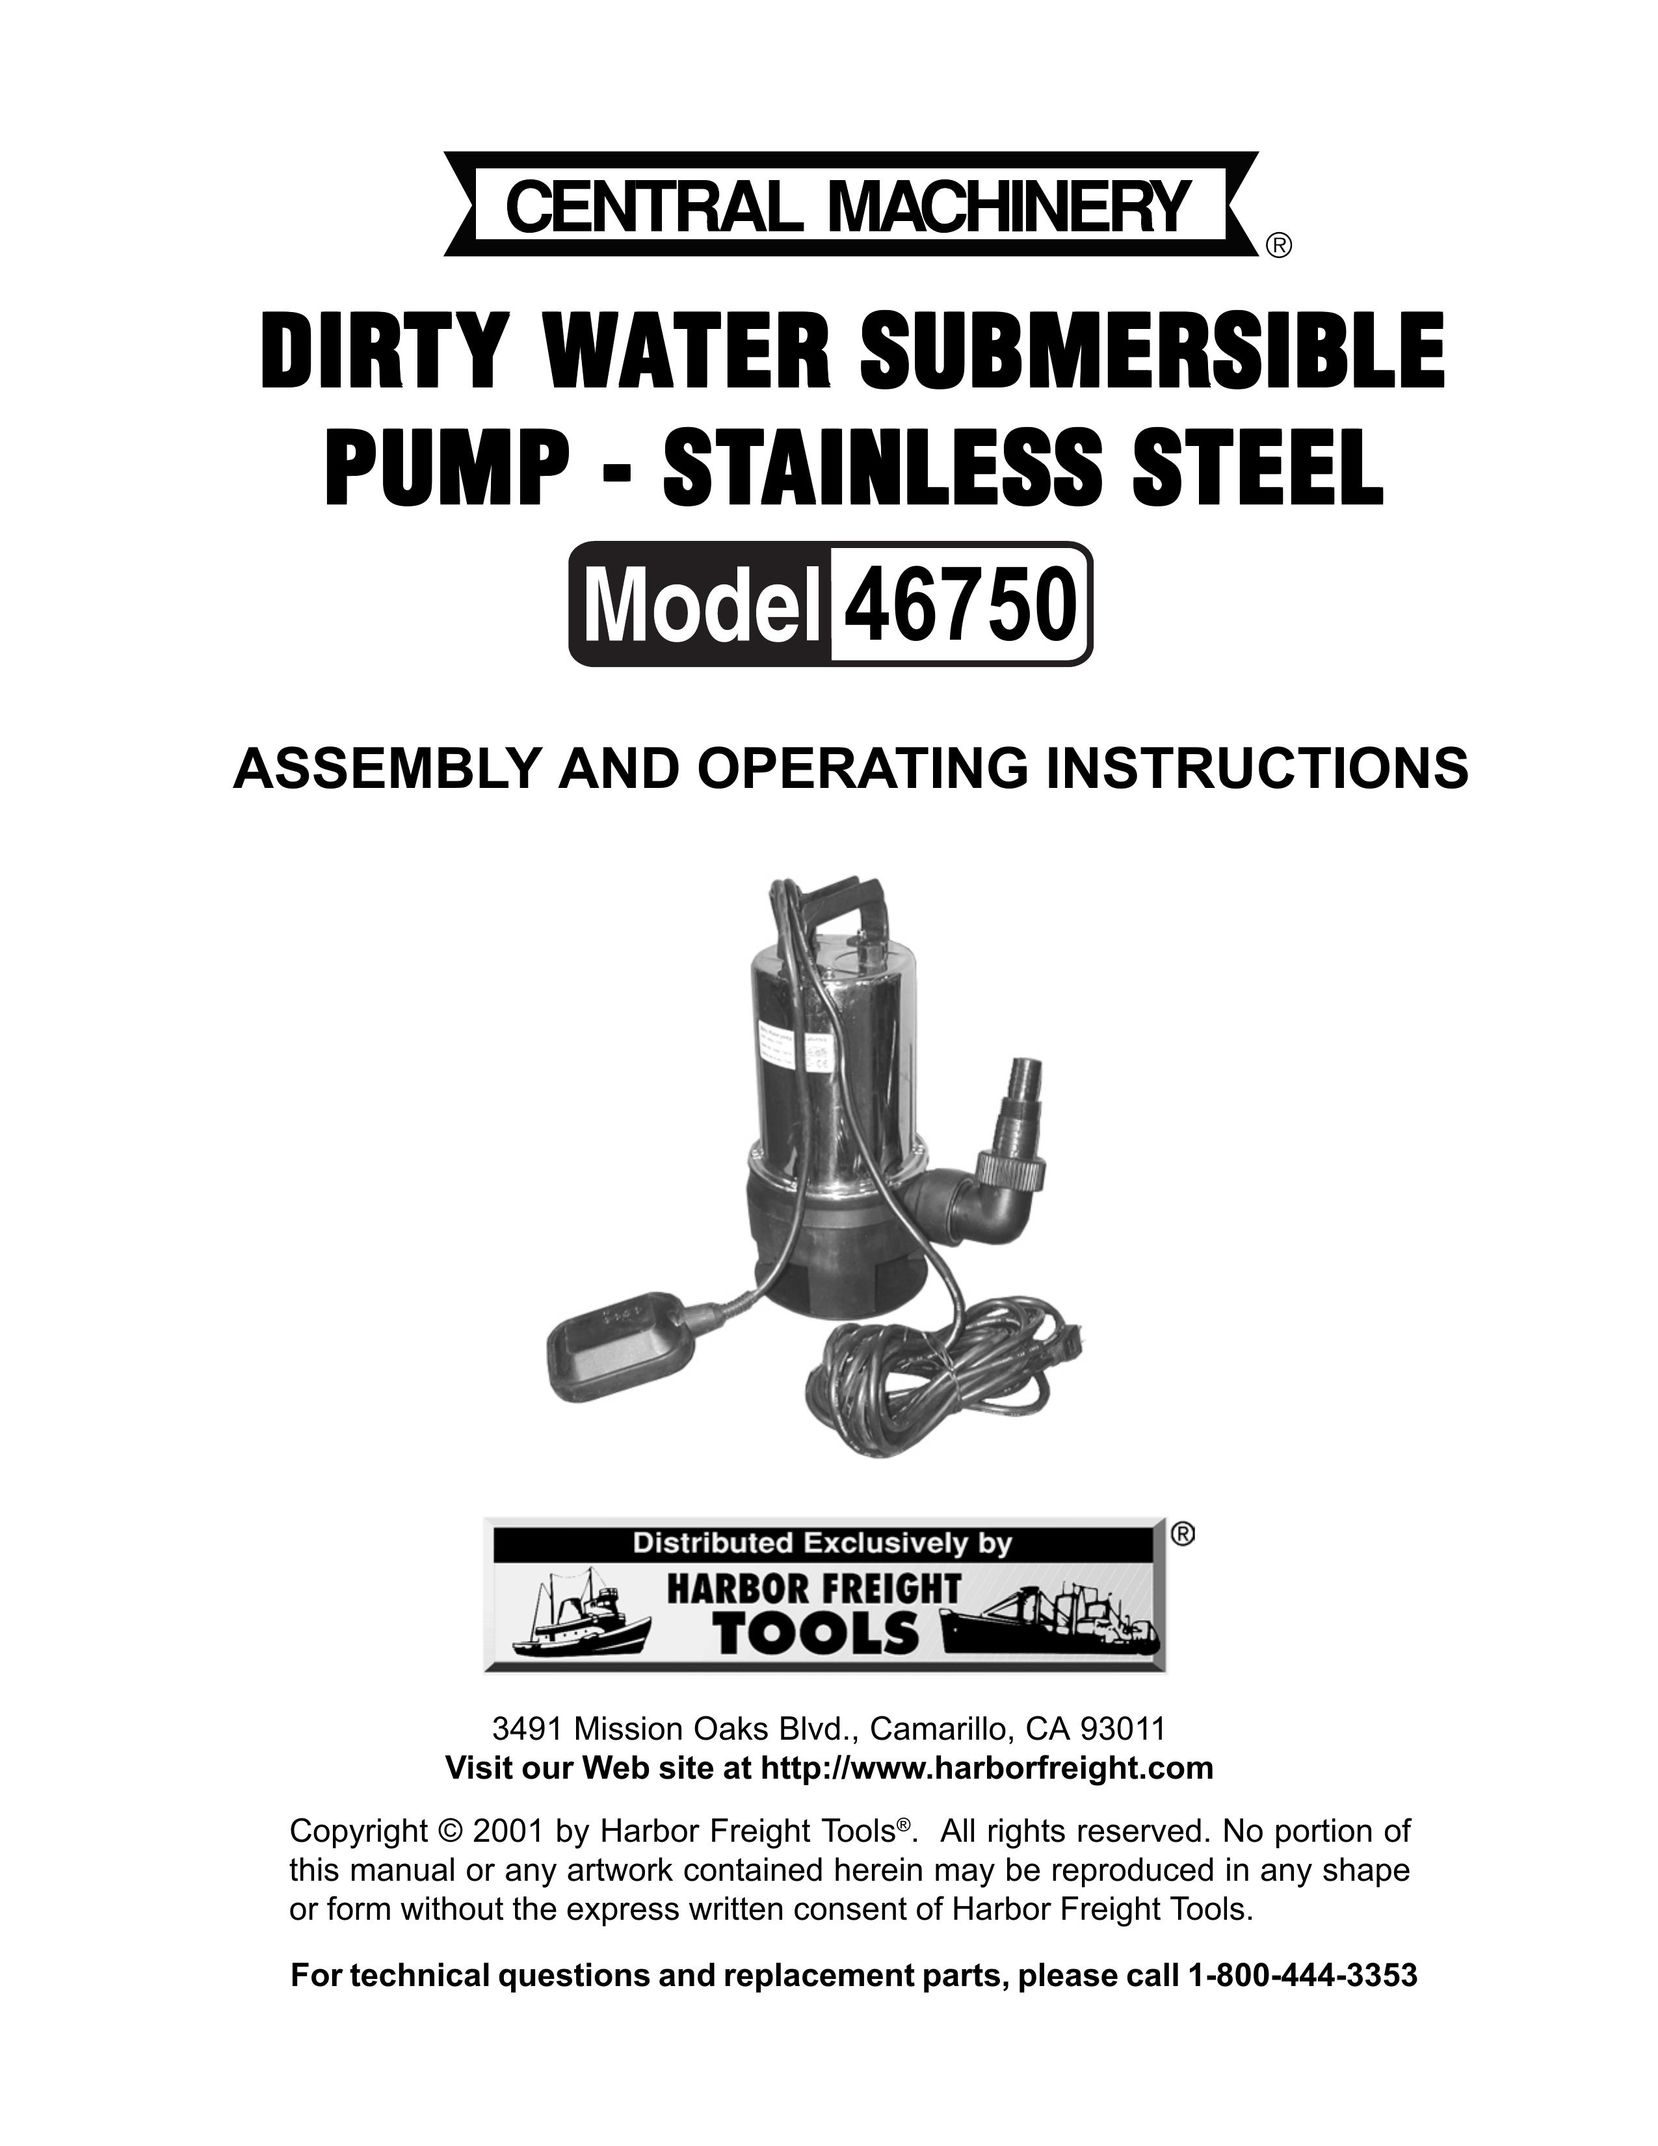 Harbor Freight Tools 46750 Water Pump User Manual